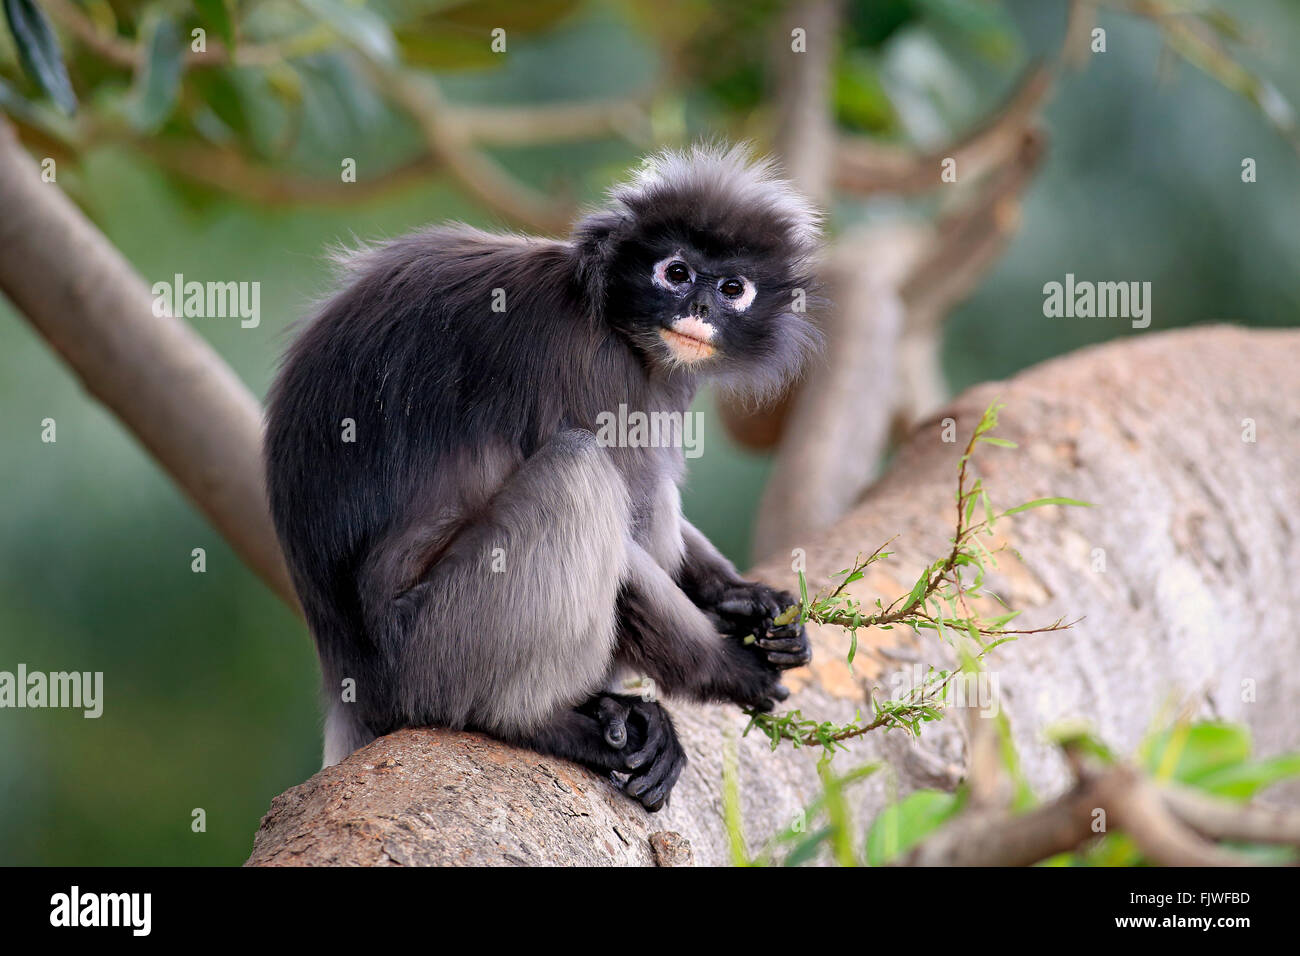 Dusky Leaf Monkey, Asia / (Trachypithecus obscurus) Stock Photo